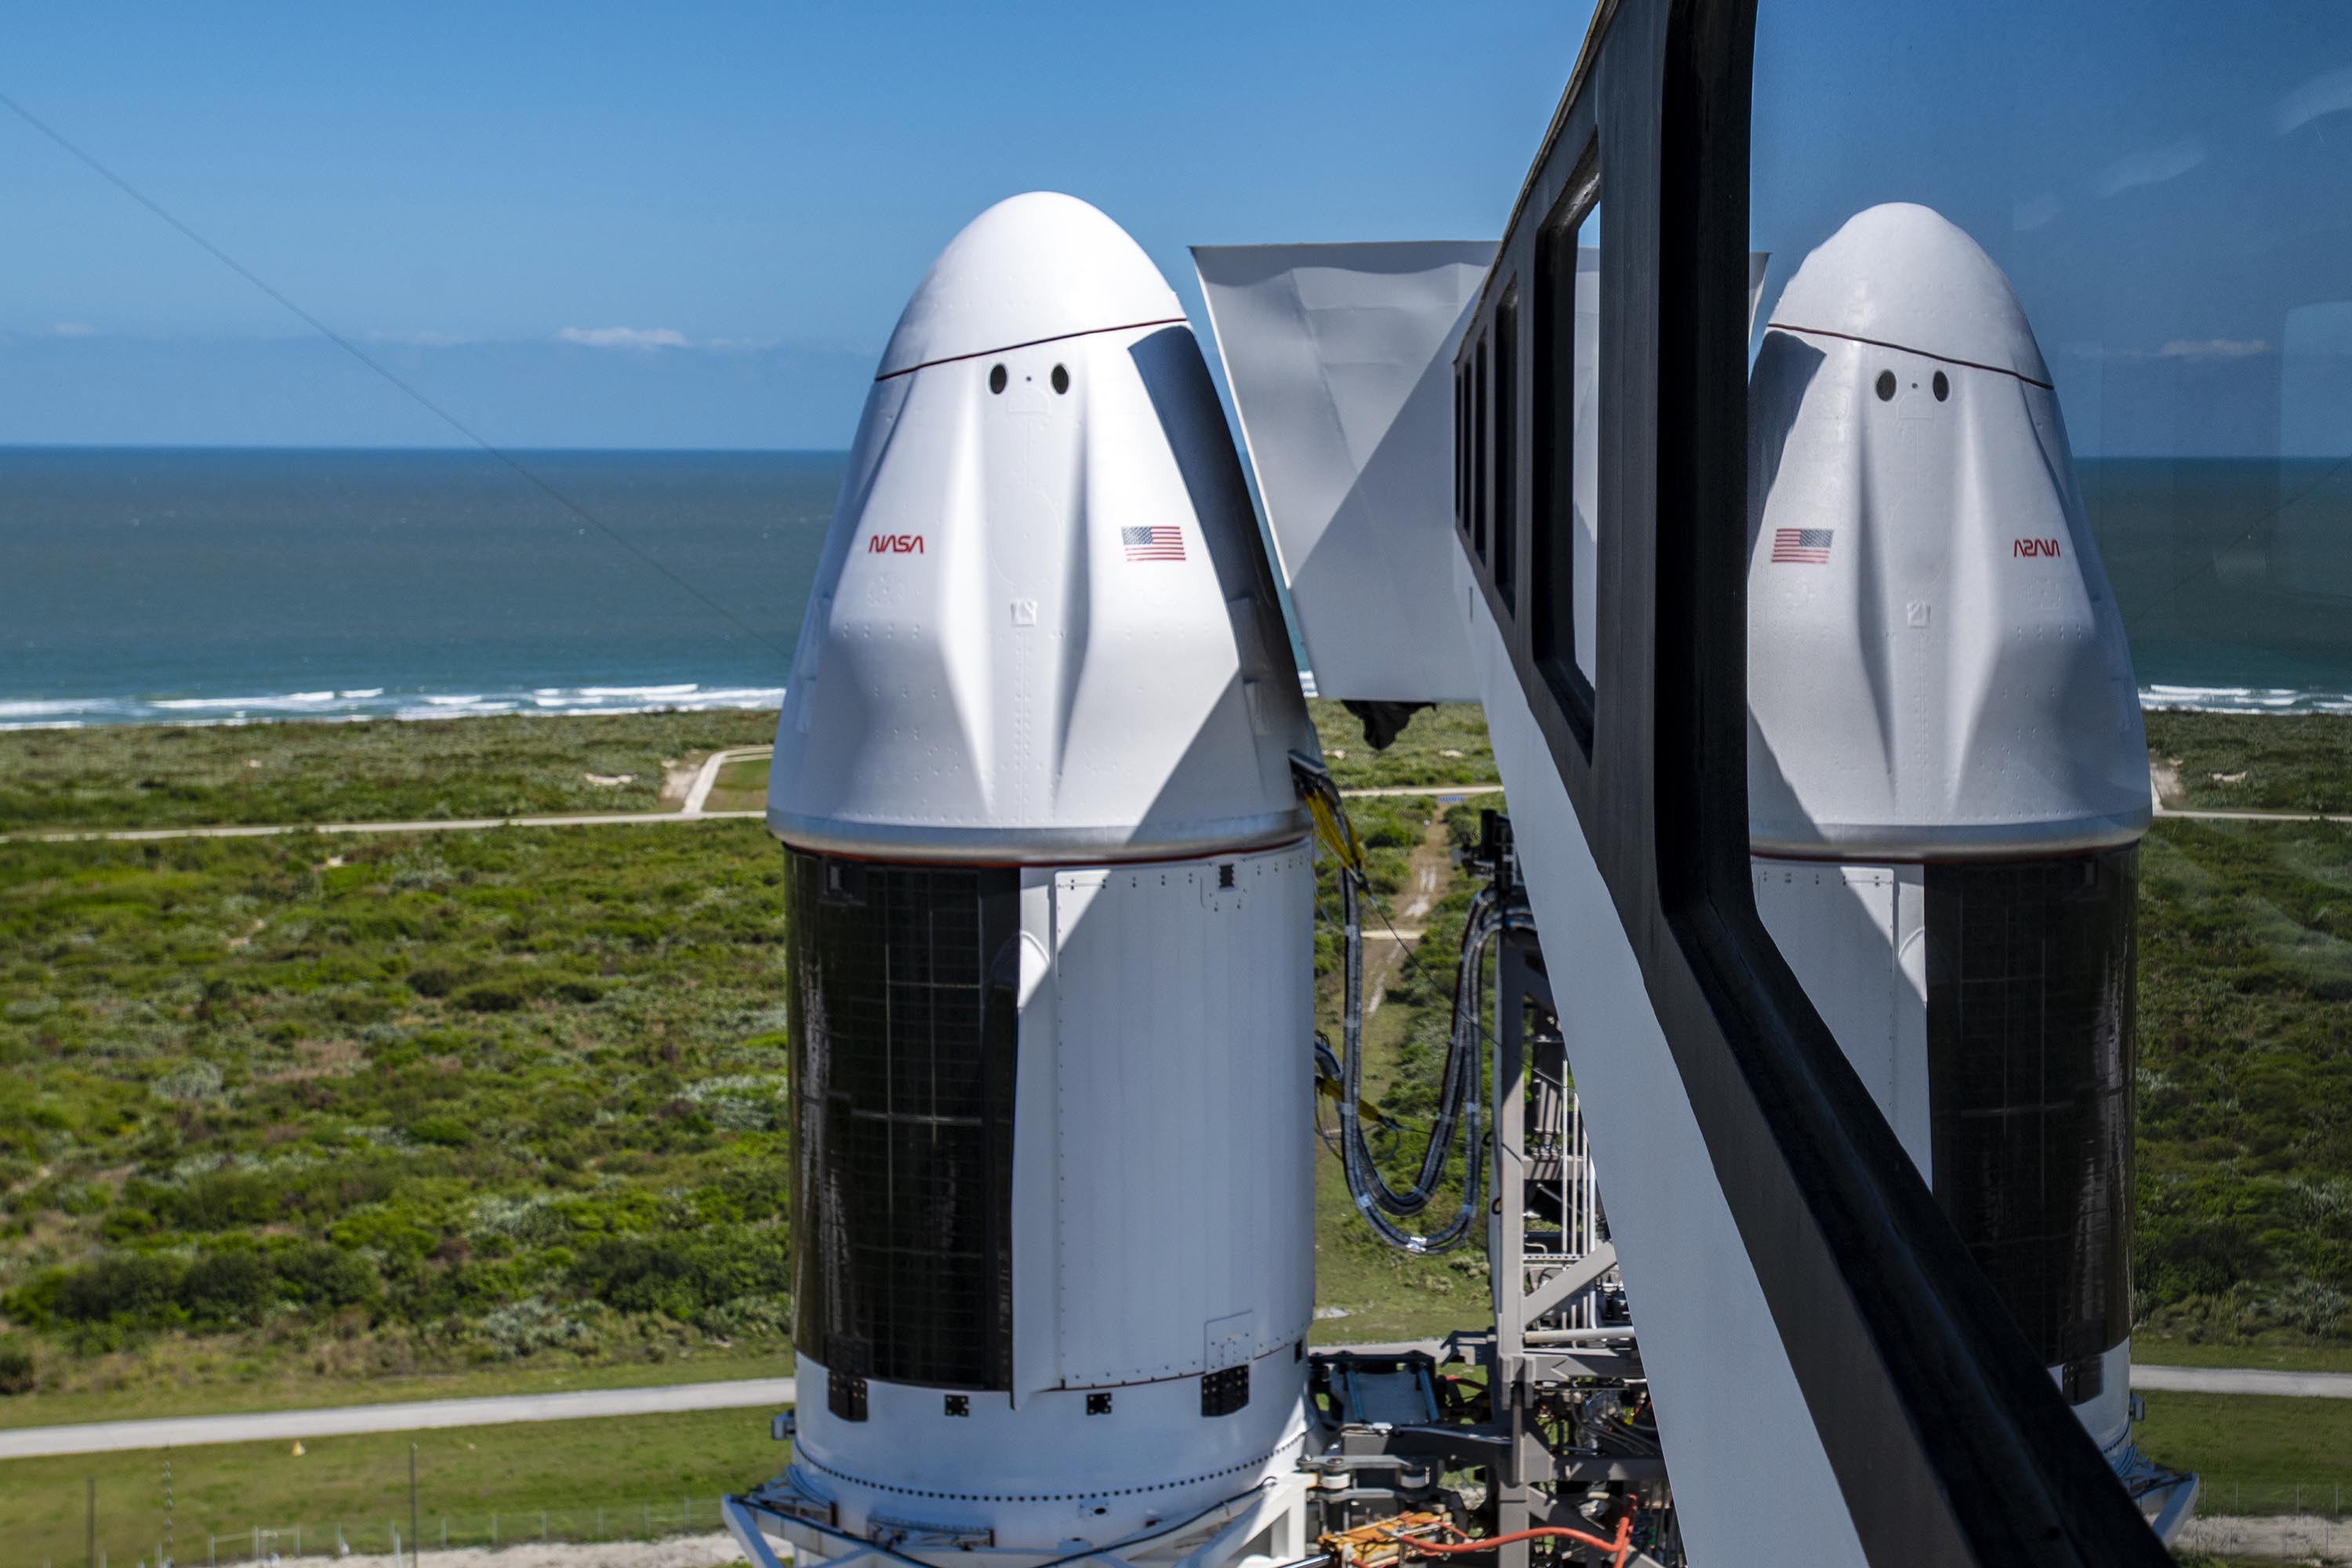 SpaceX ejderhası slc-40'ta